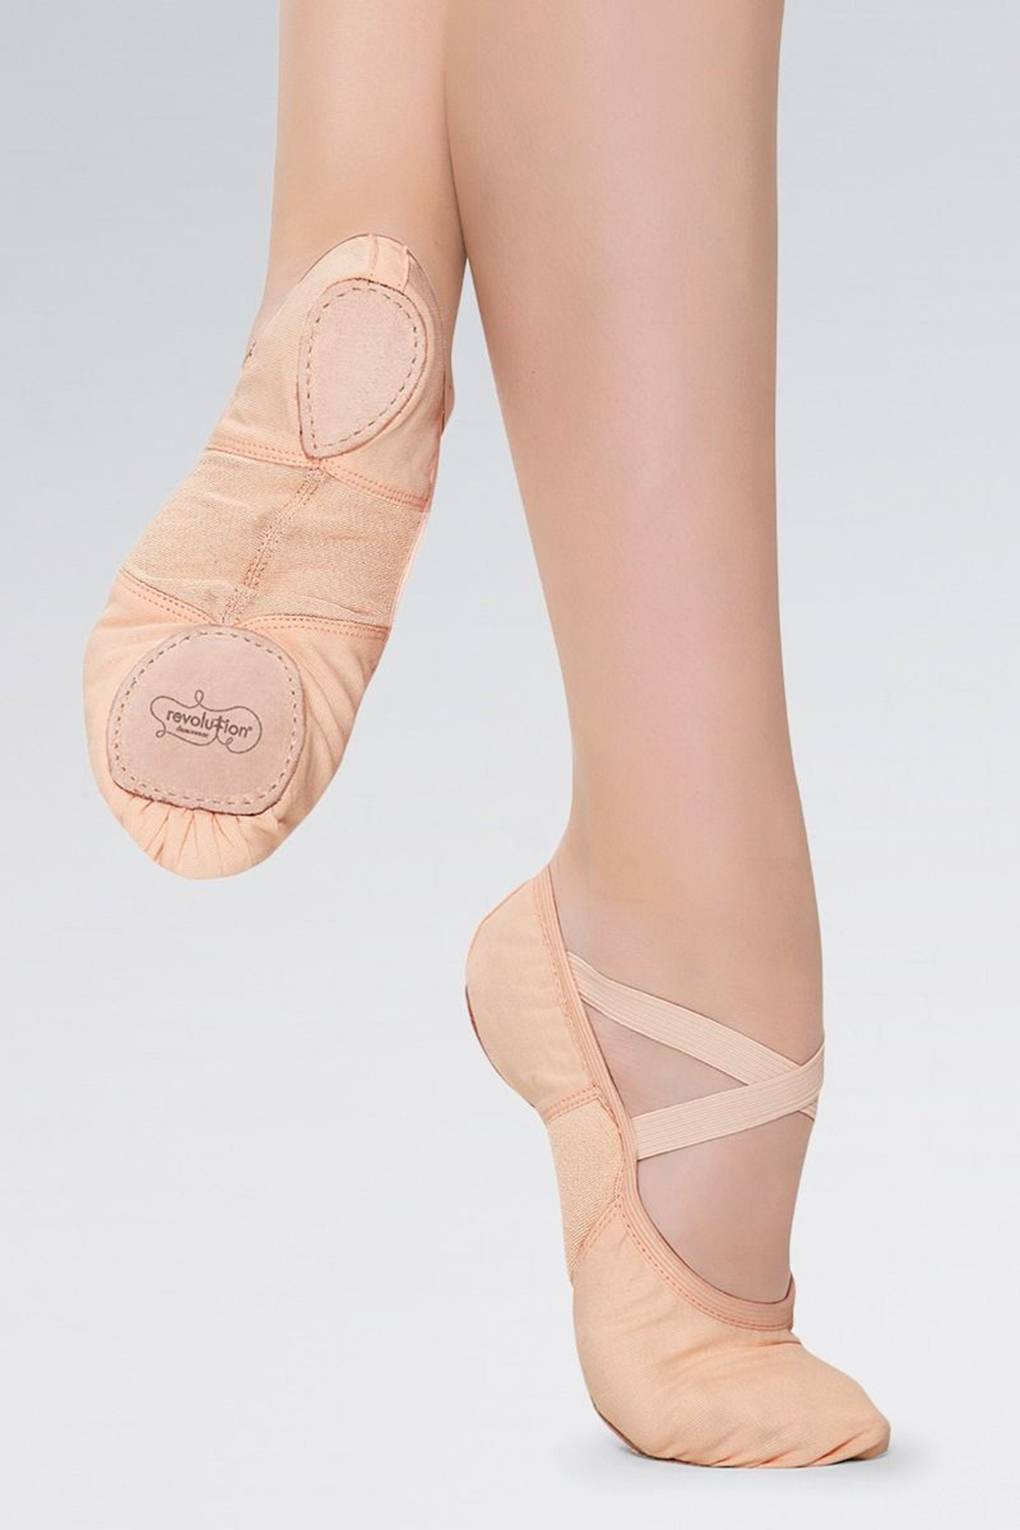 Heel ballett trainer high Heels